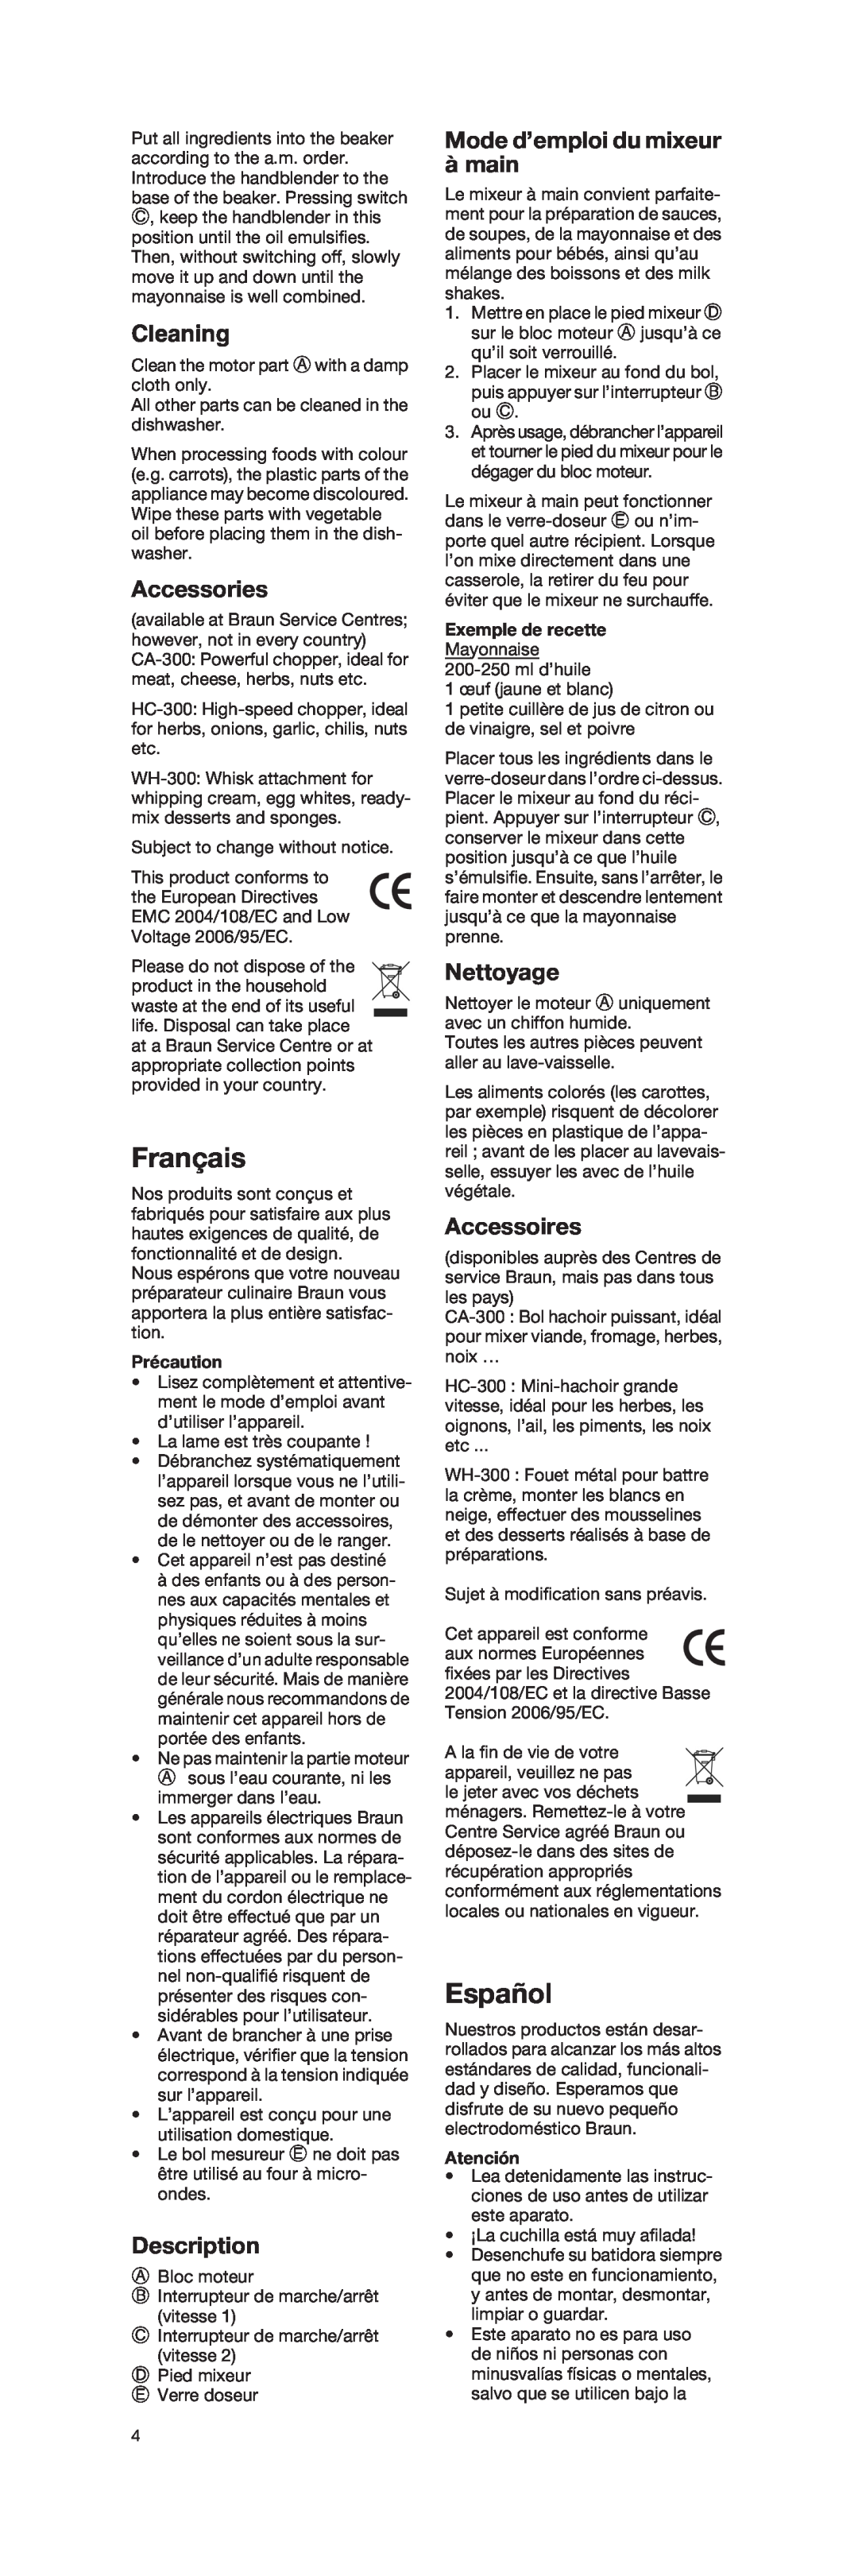 Braun 4162 Français, Español, Cleaning, Accessories, Mode d’emploi du mixeur à main, Nettoyage, Accessoires, Description 